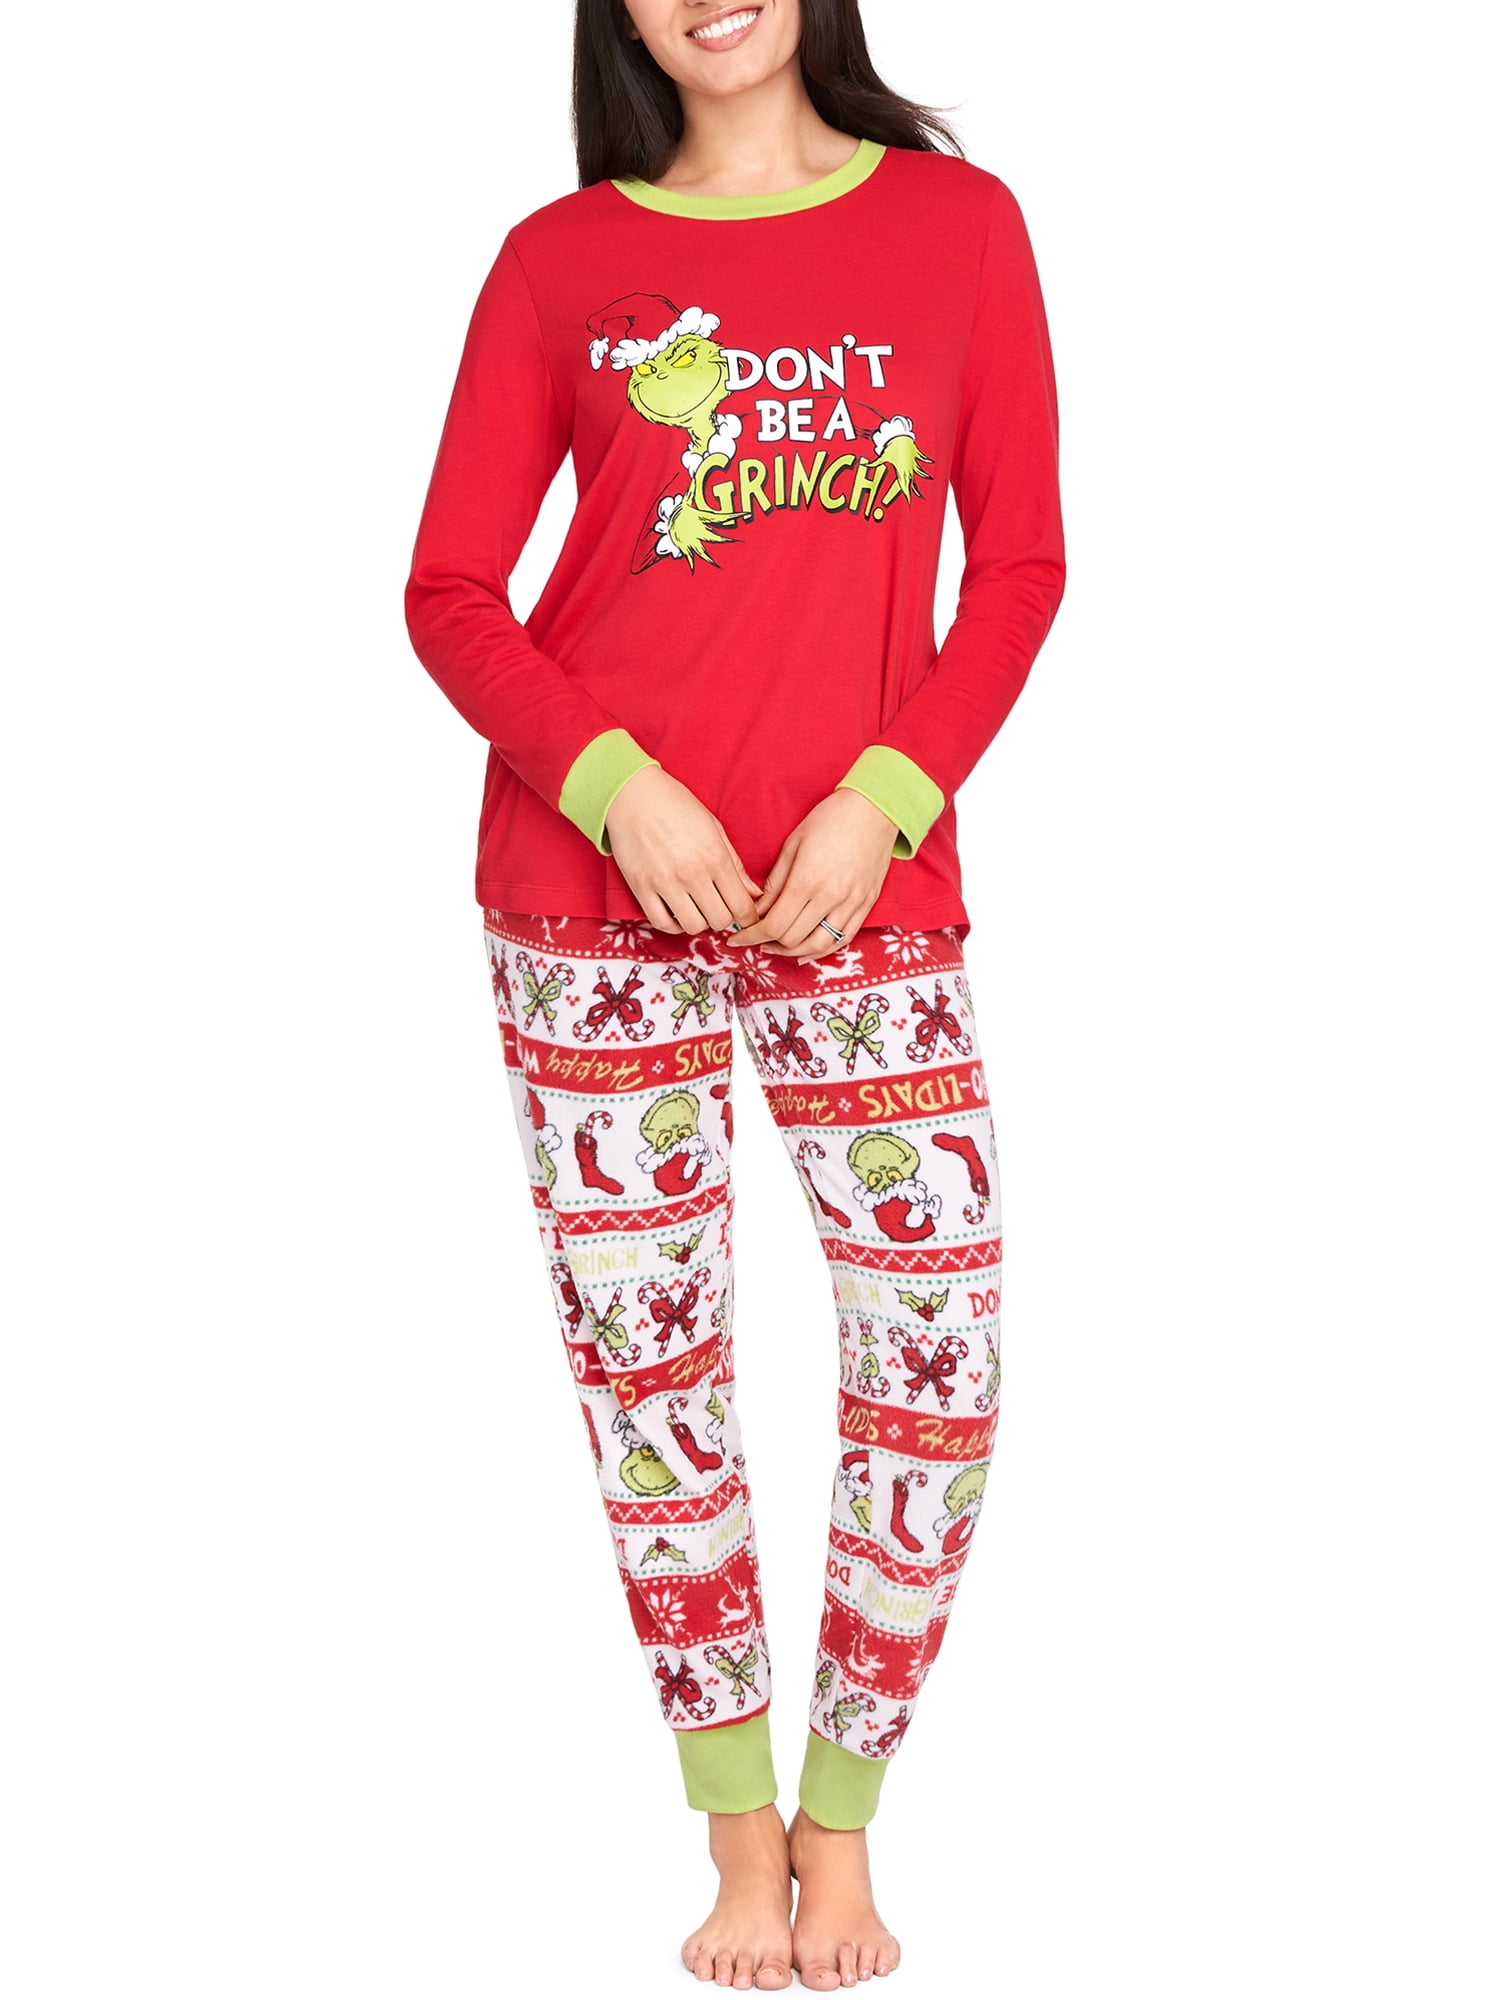 Venta > pijamas de navidad grinch > en stock